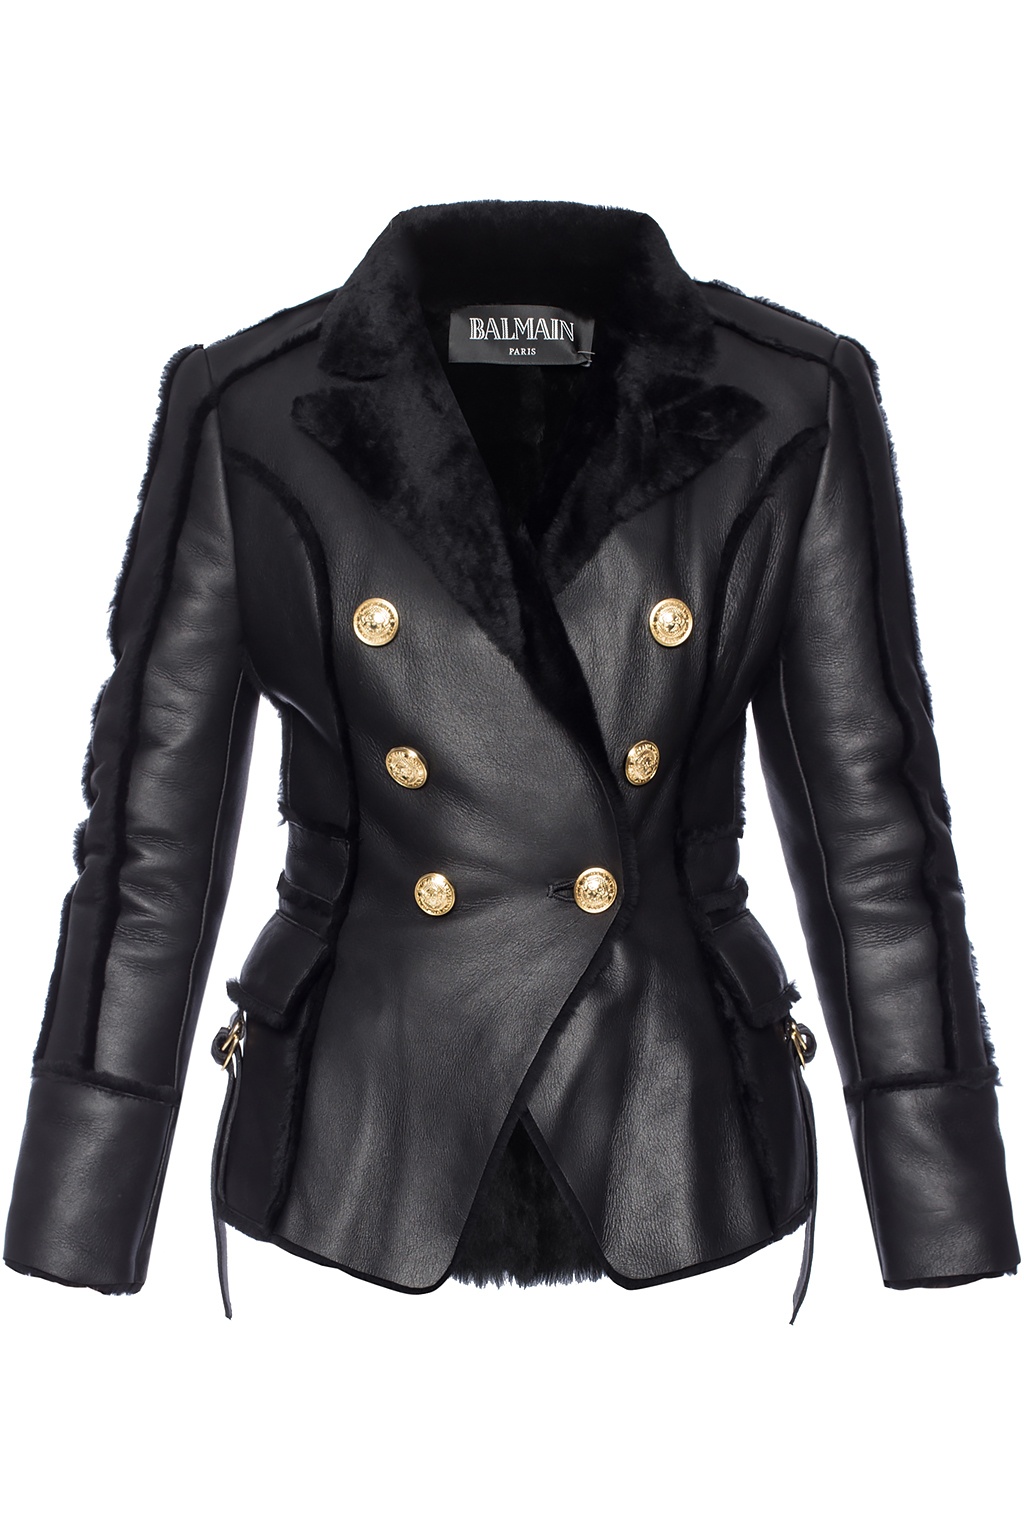 Balmain shearling jacket | Women's Clothing | Vitkac